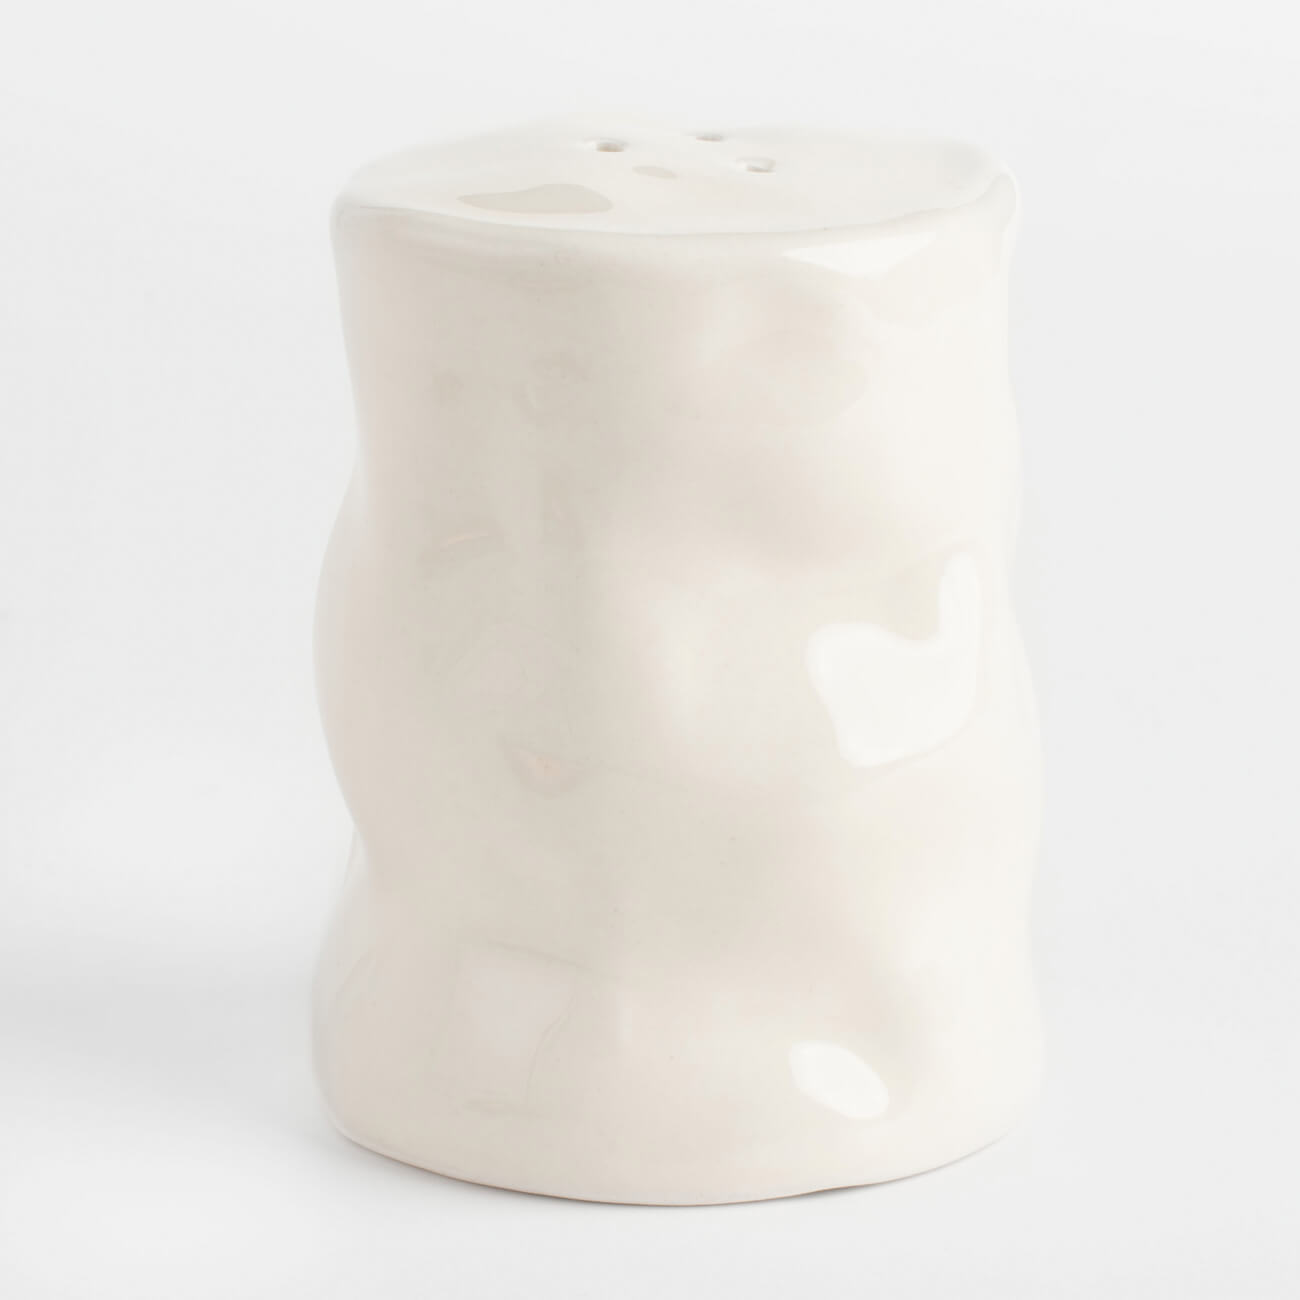 кружка 450 мл керамика молочная мятый эффект crumple Емкость для соли или перца, 7 см, керамика, молочная, Мятый эффект, Crumple